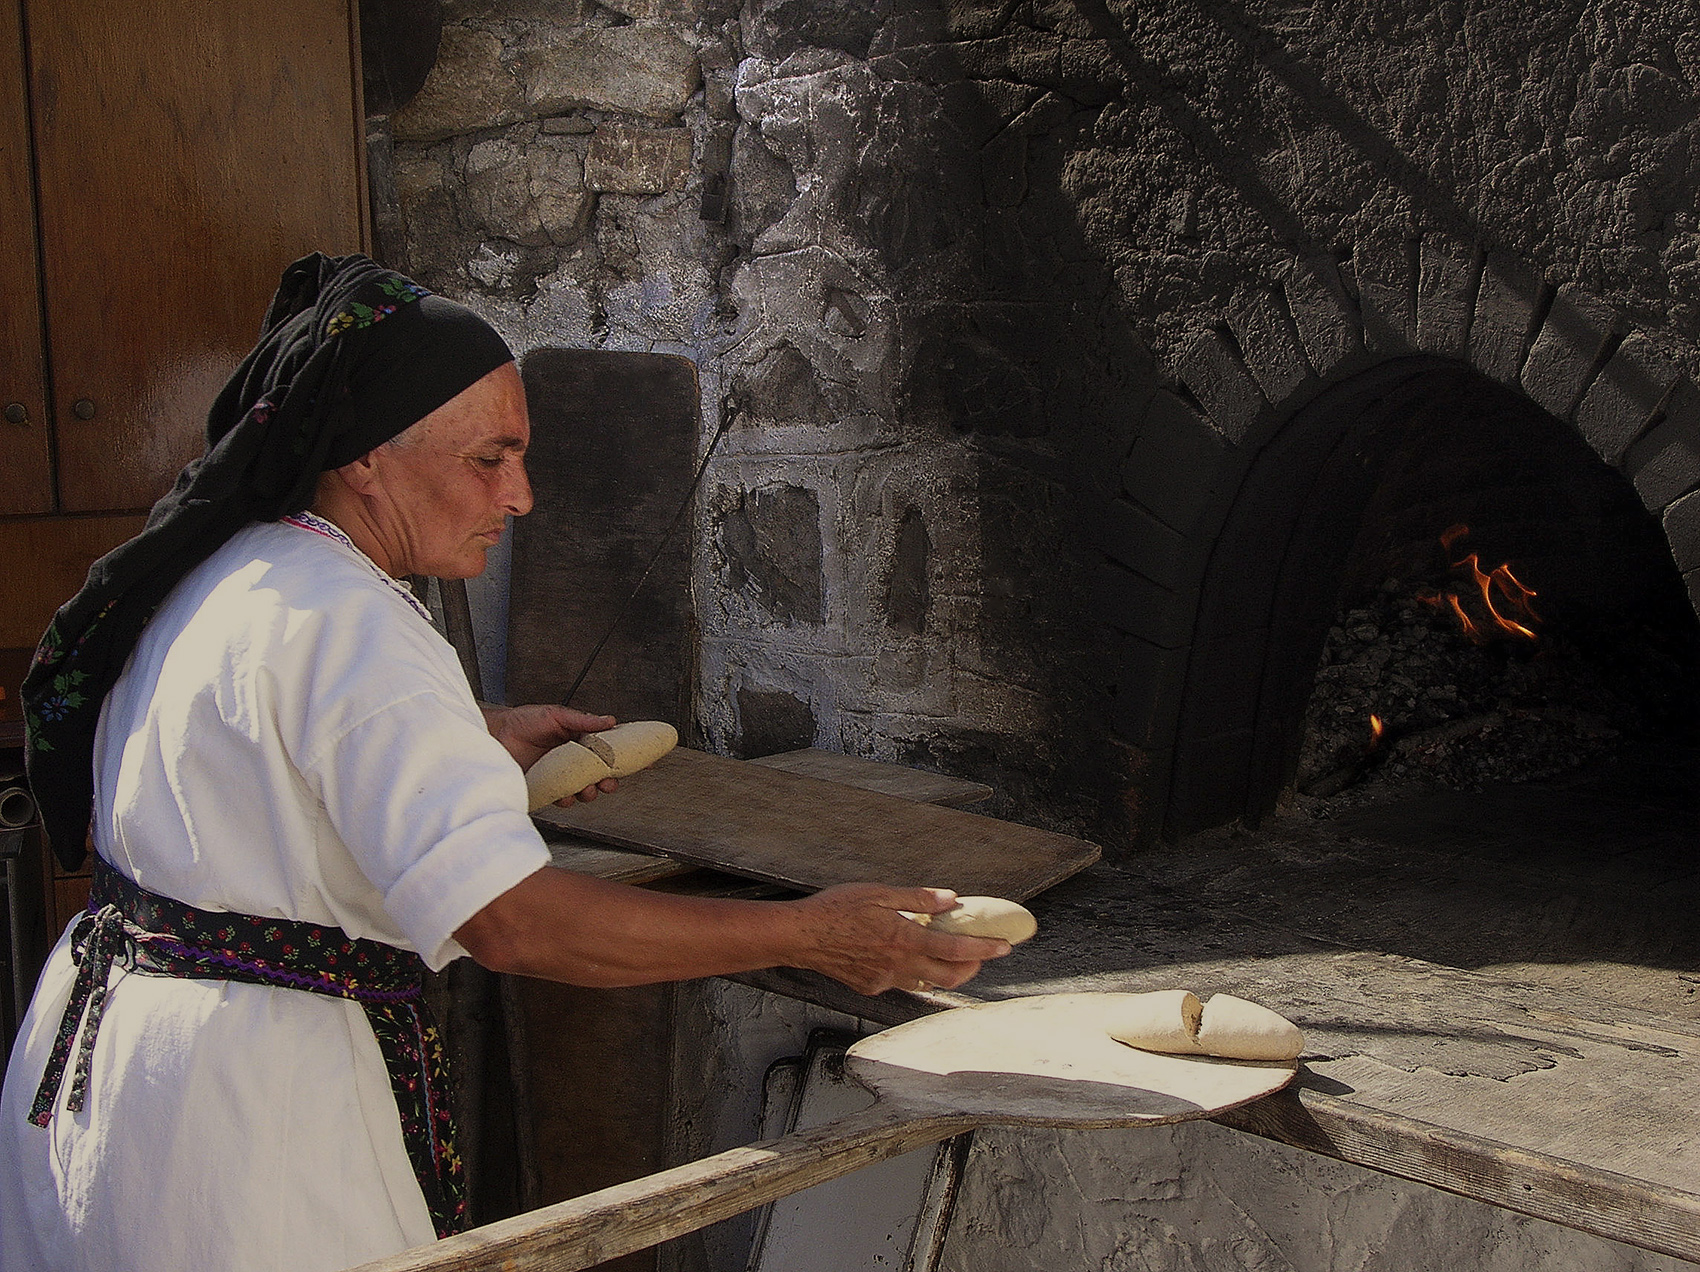 Baking bread, Rhodes